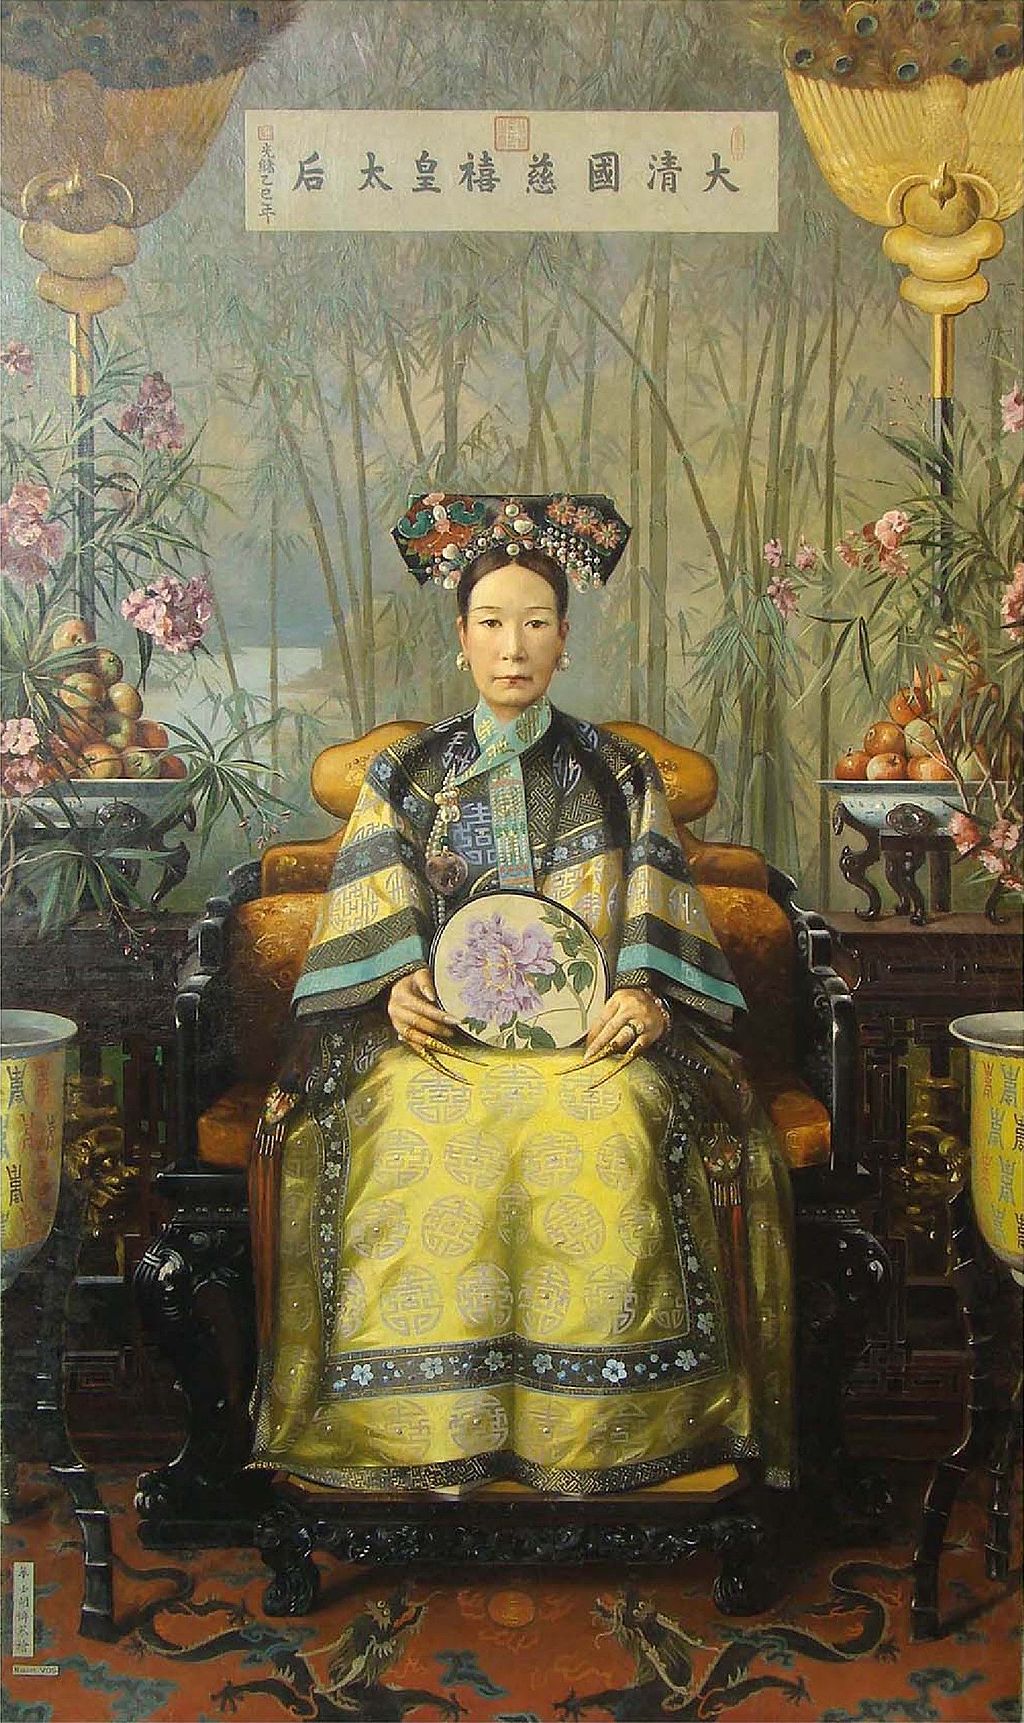 The original The Empress Dowager Cixi by Hubert Voss